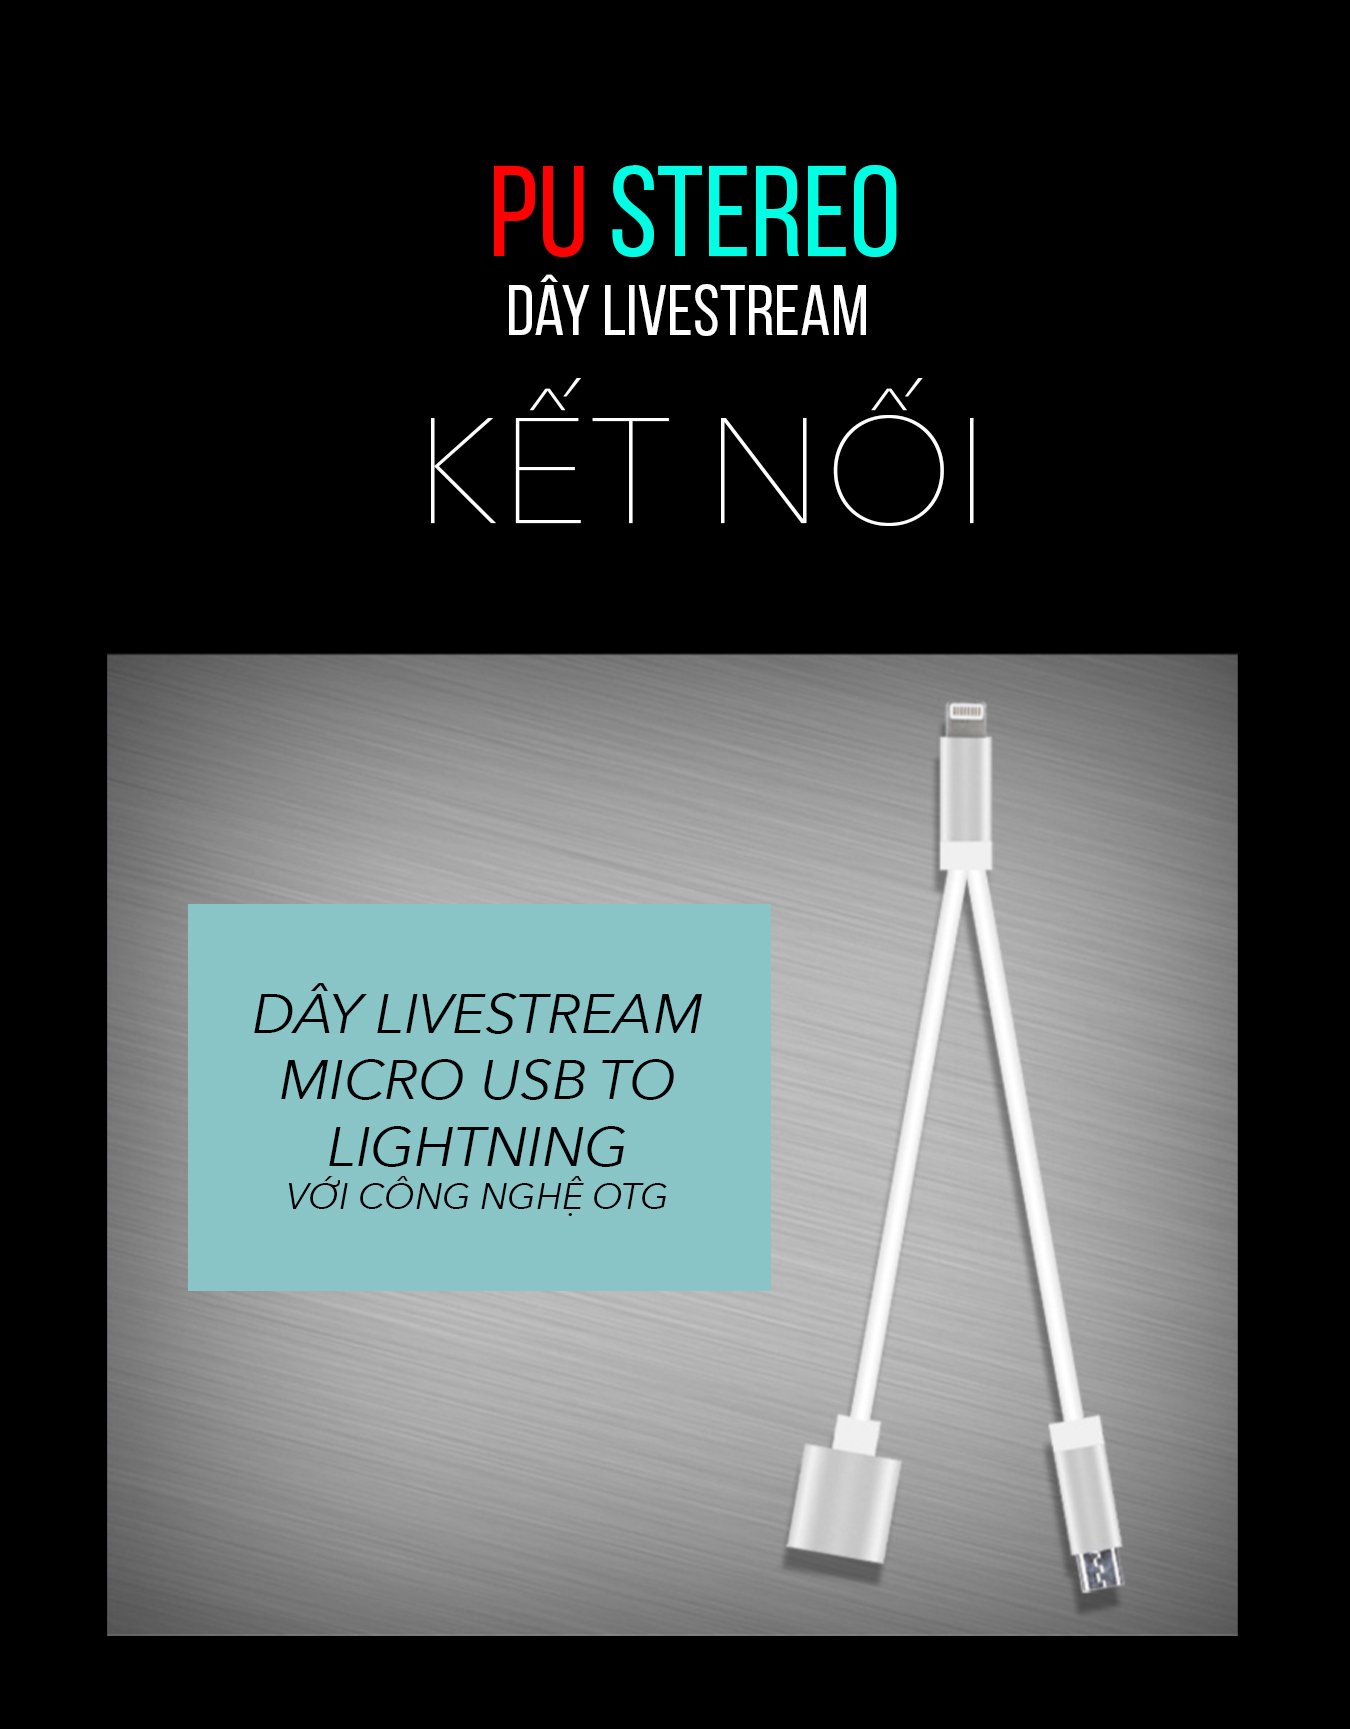 Dây livestream PU Stereo (công nghệ OTG)